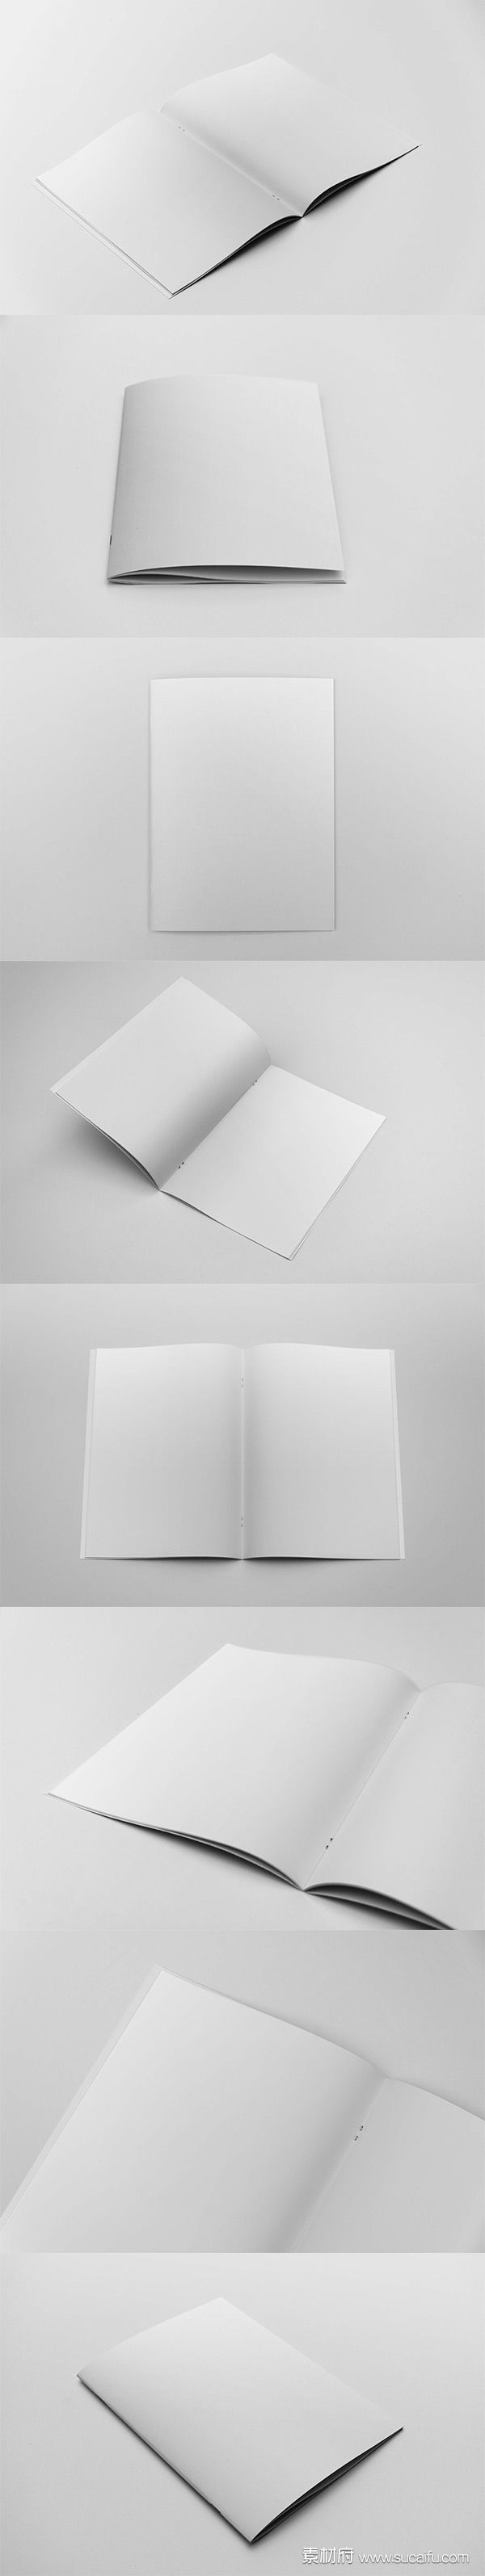 一套空白画册展示模板